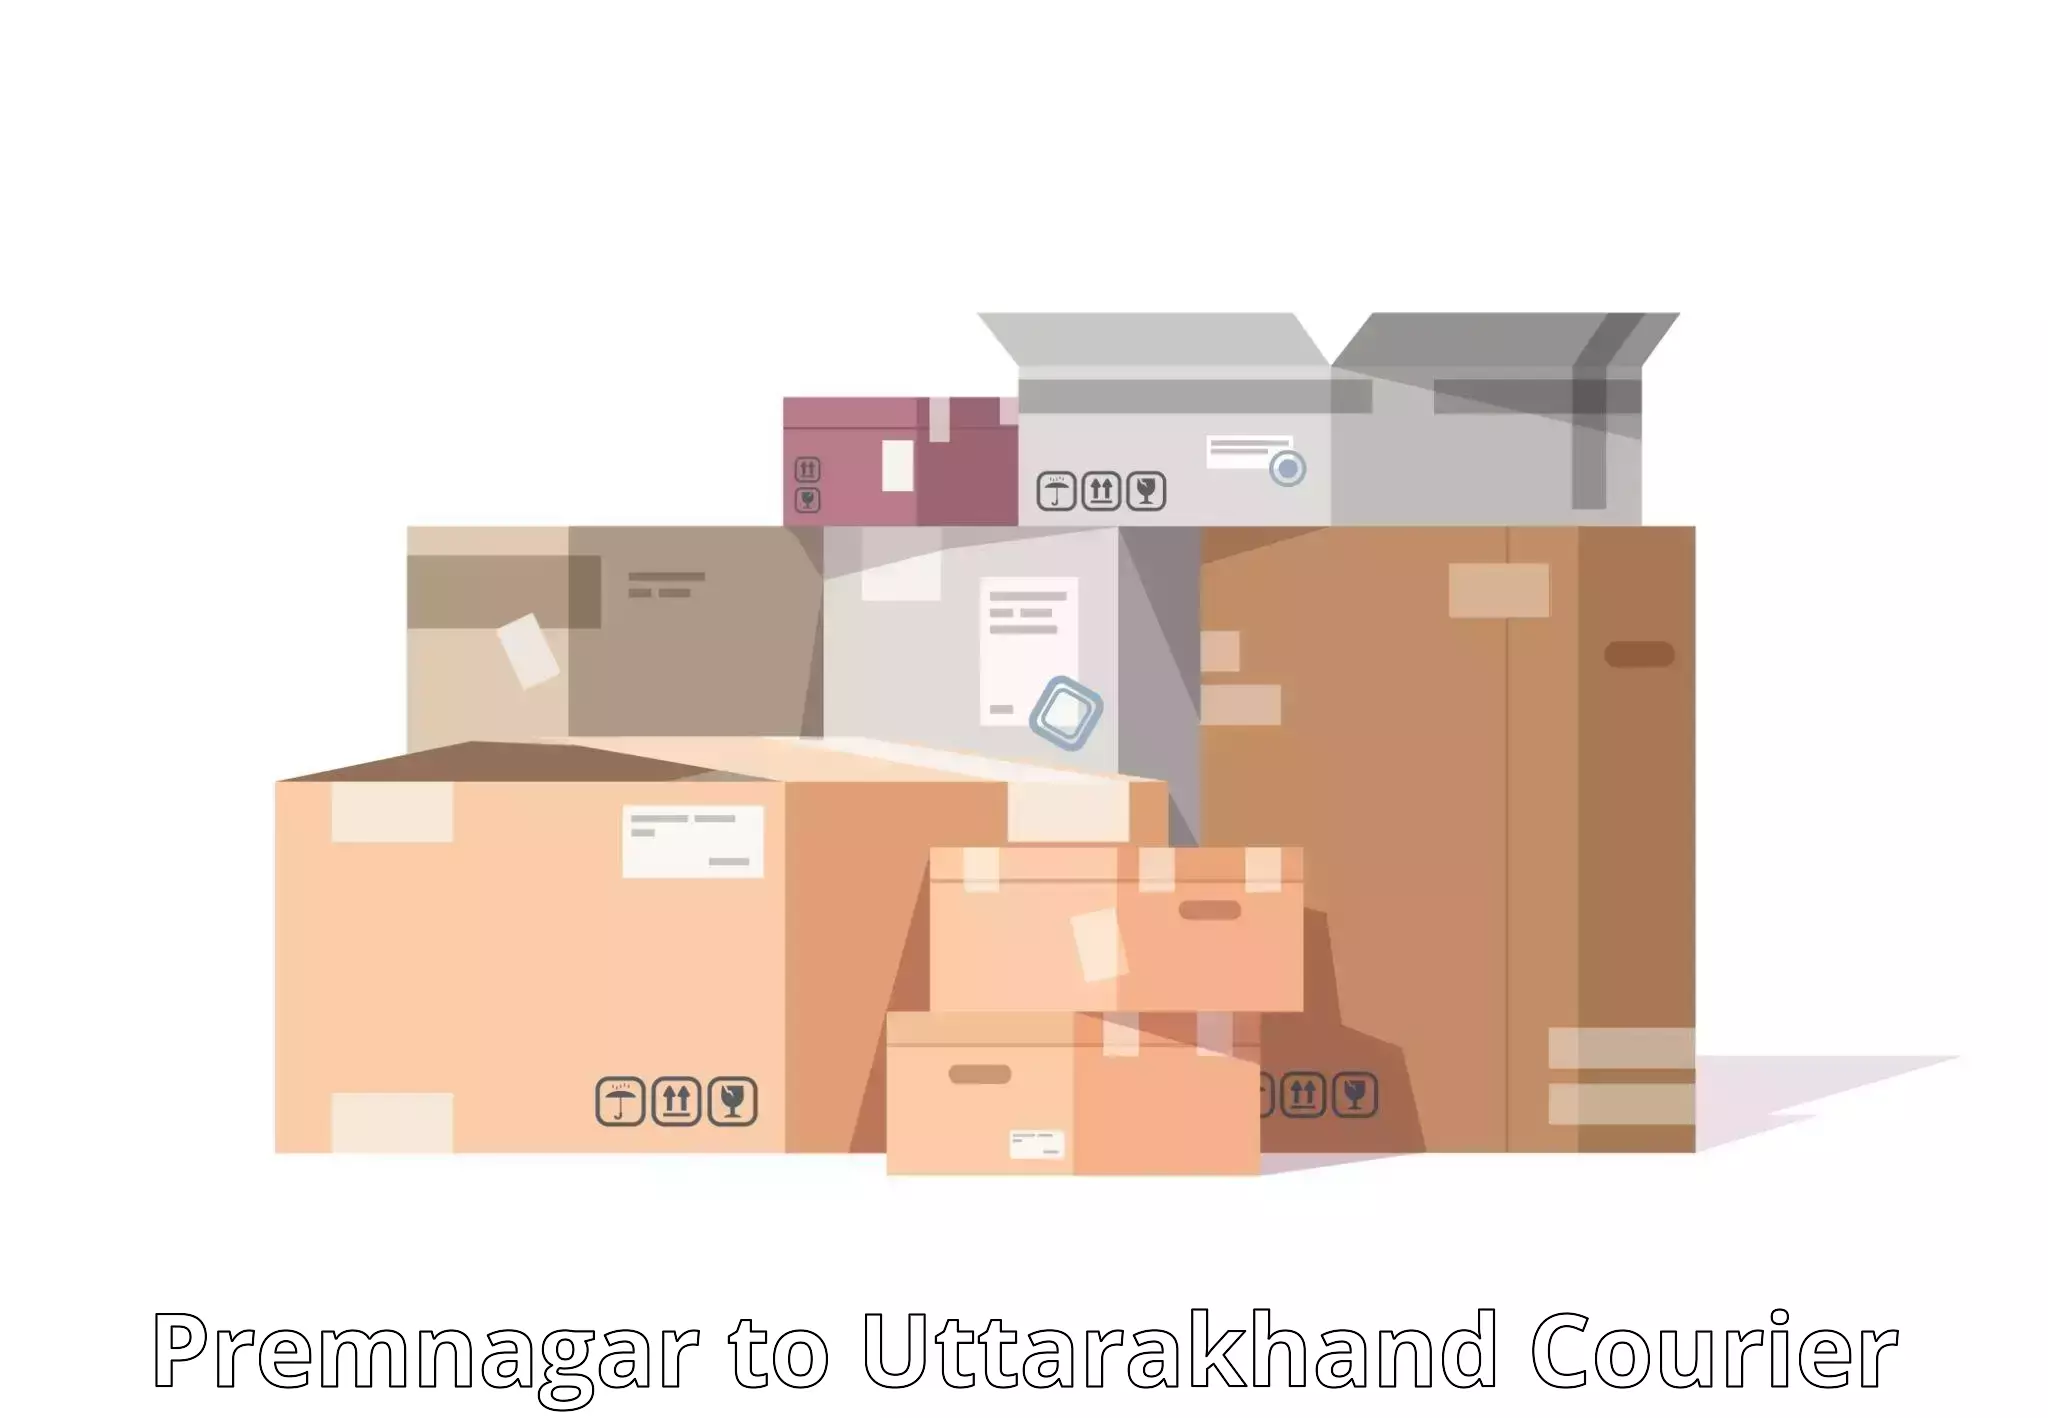 Package delivery network in Premnagar to Uttarkashi